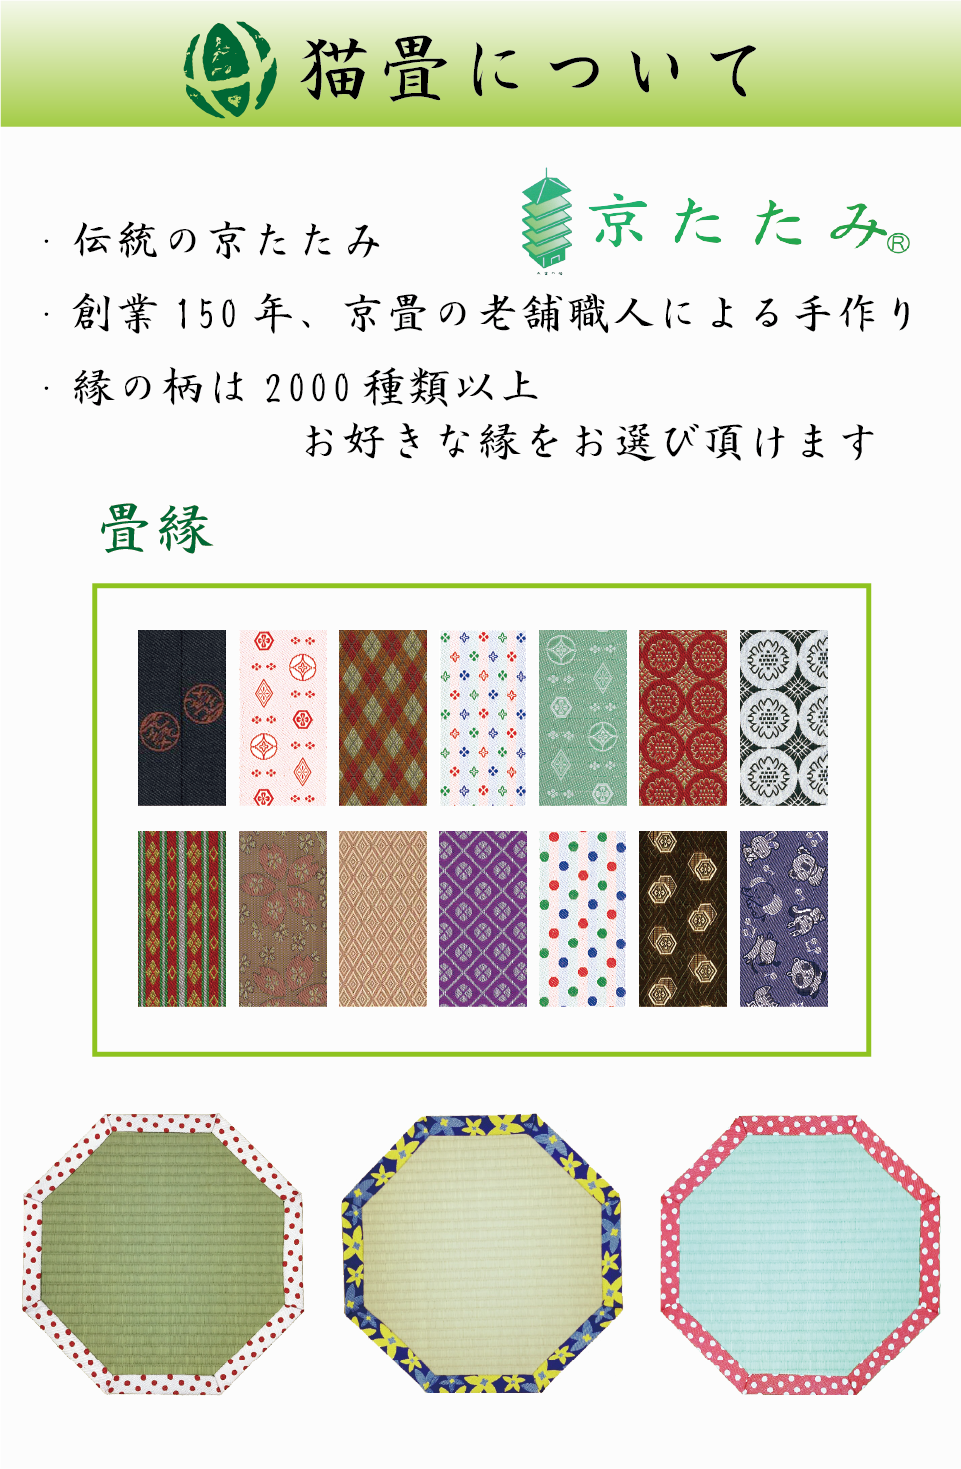 猫畳について。創業150年、京畳の老舗職人による手作り。縁の柄は2000種類以上。お好きな縁をお選び頂けます。